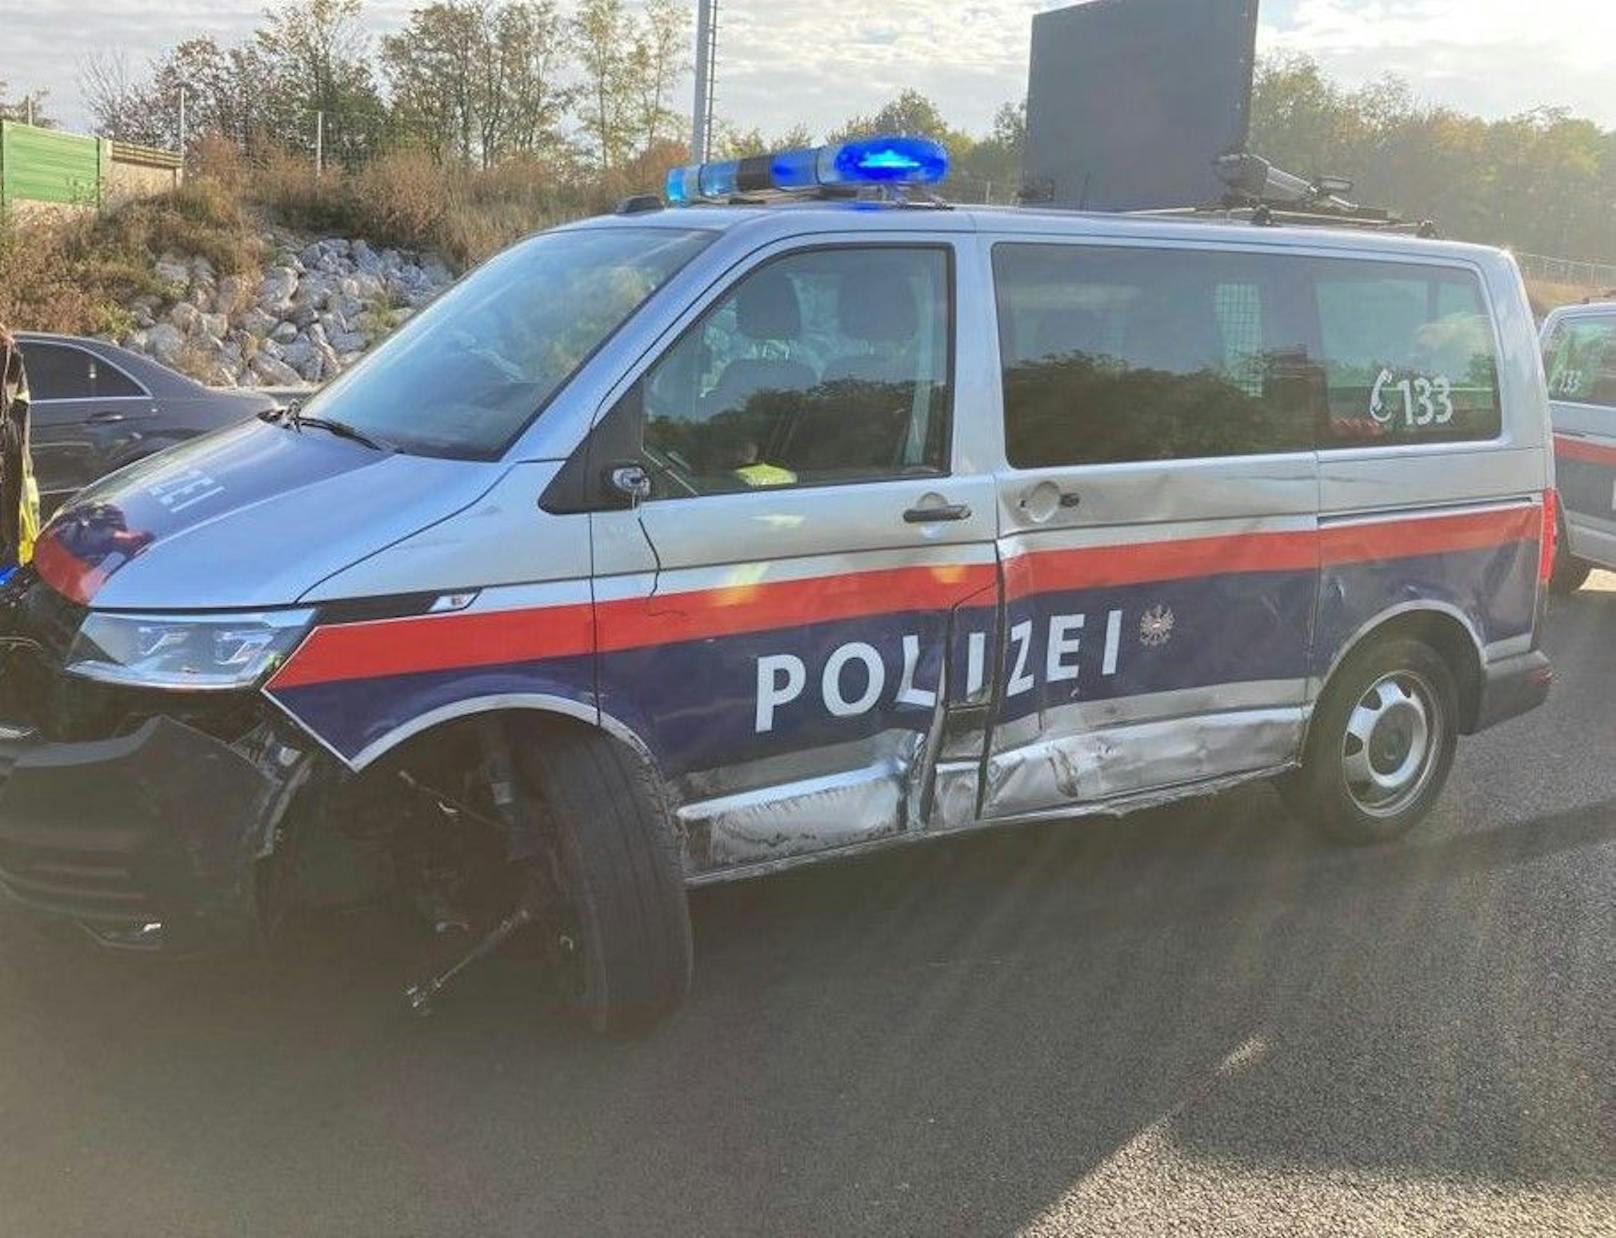 Das beschädigte Polizeiauto